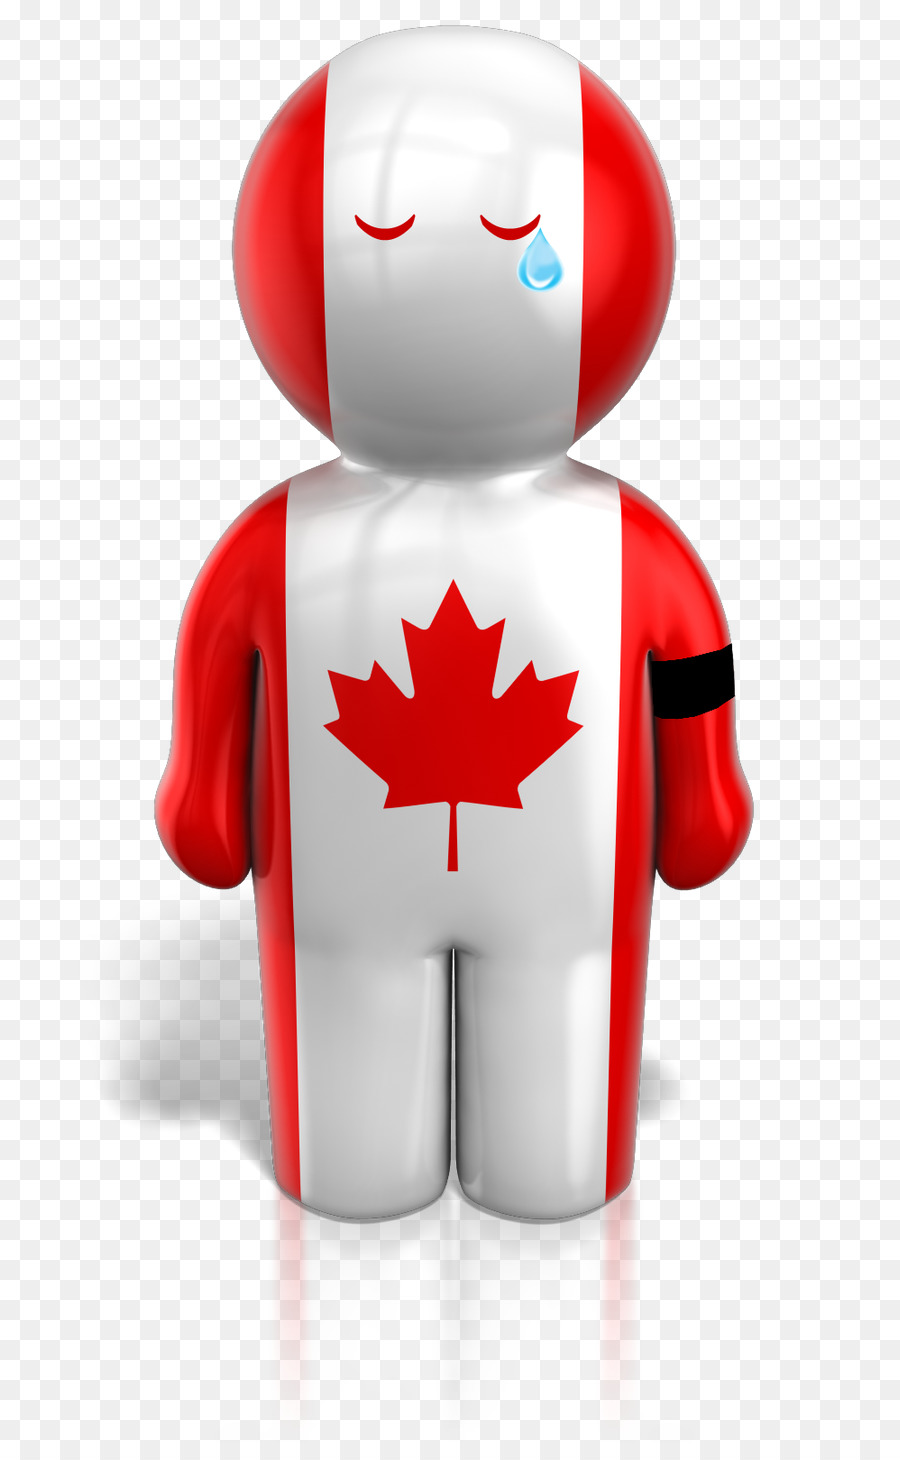 Flagge Kanada Flagge von Mexiko-clipart - Kanada